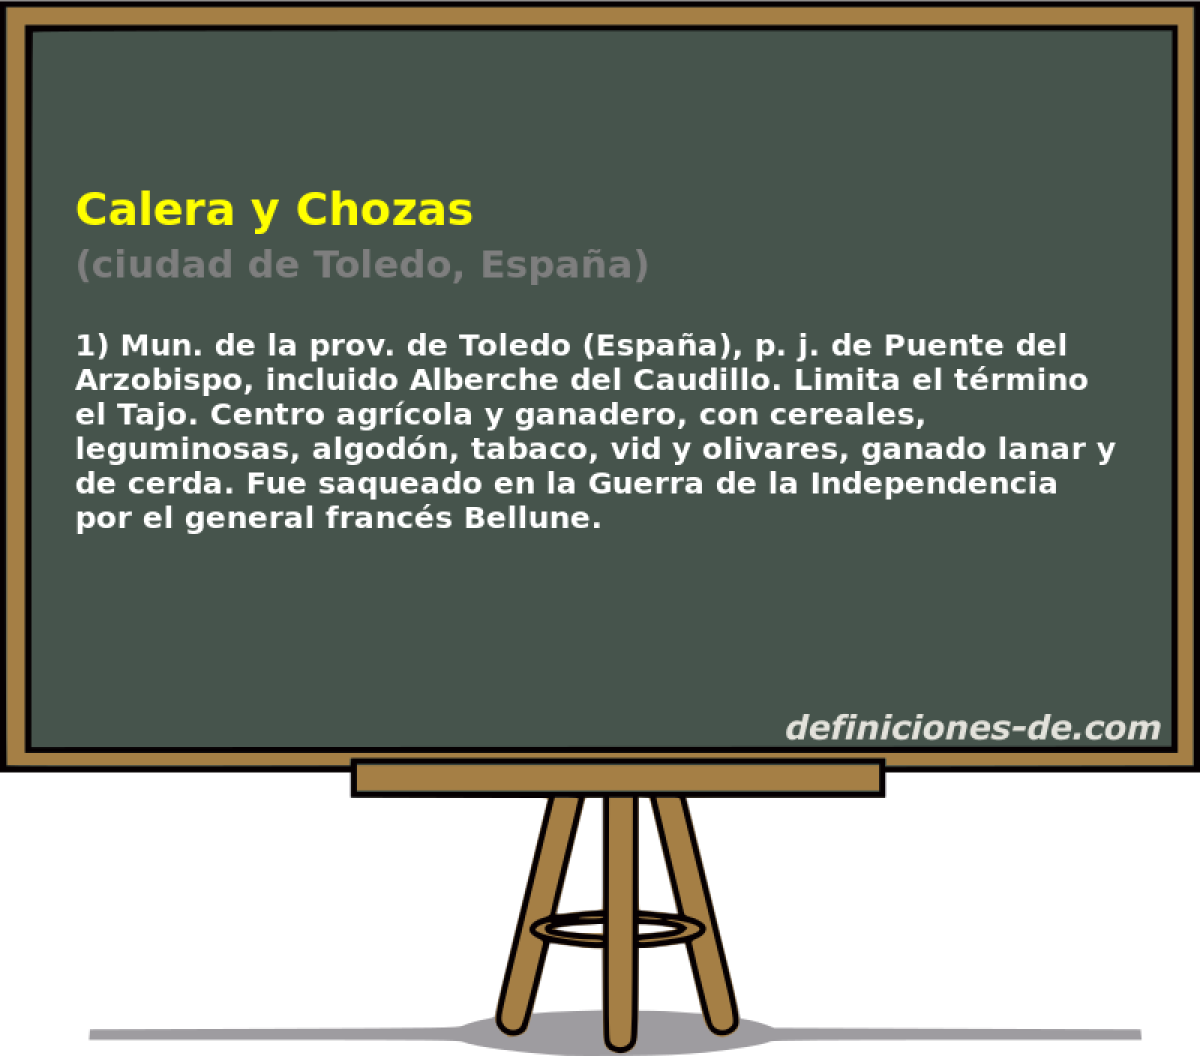 Calera y Chozas (ciudad de Toledo, Espaa)